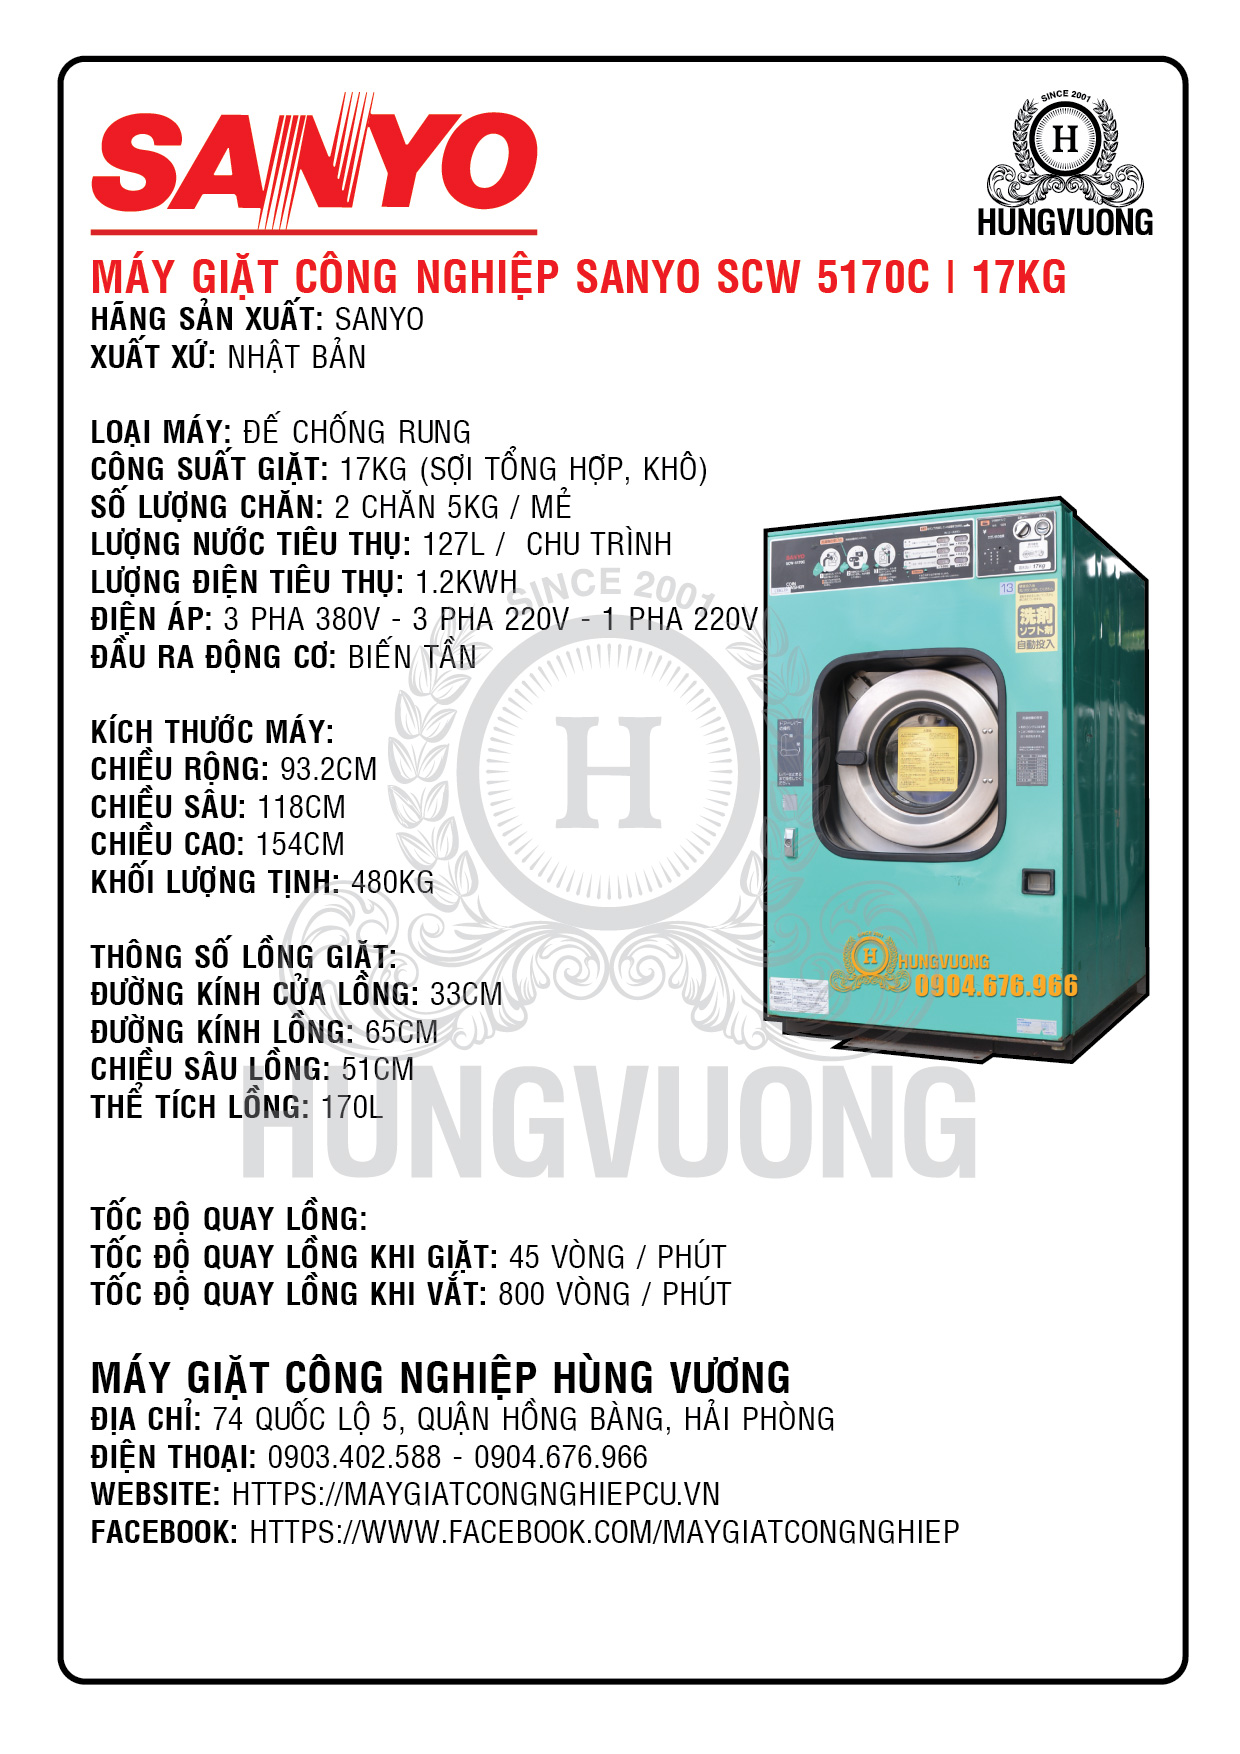 Thông số kỹ thuật máy giặt công nghiệp SANYO SCW 5170C, 17kg,  chân chống rung, biến tần, Nhật Bản